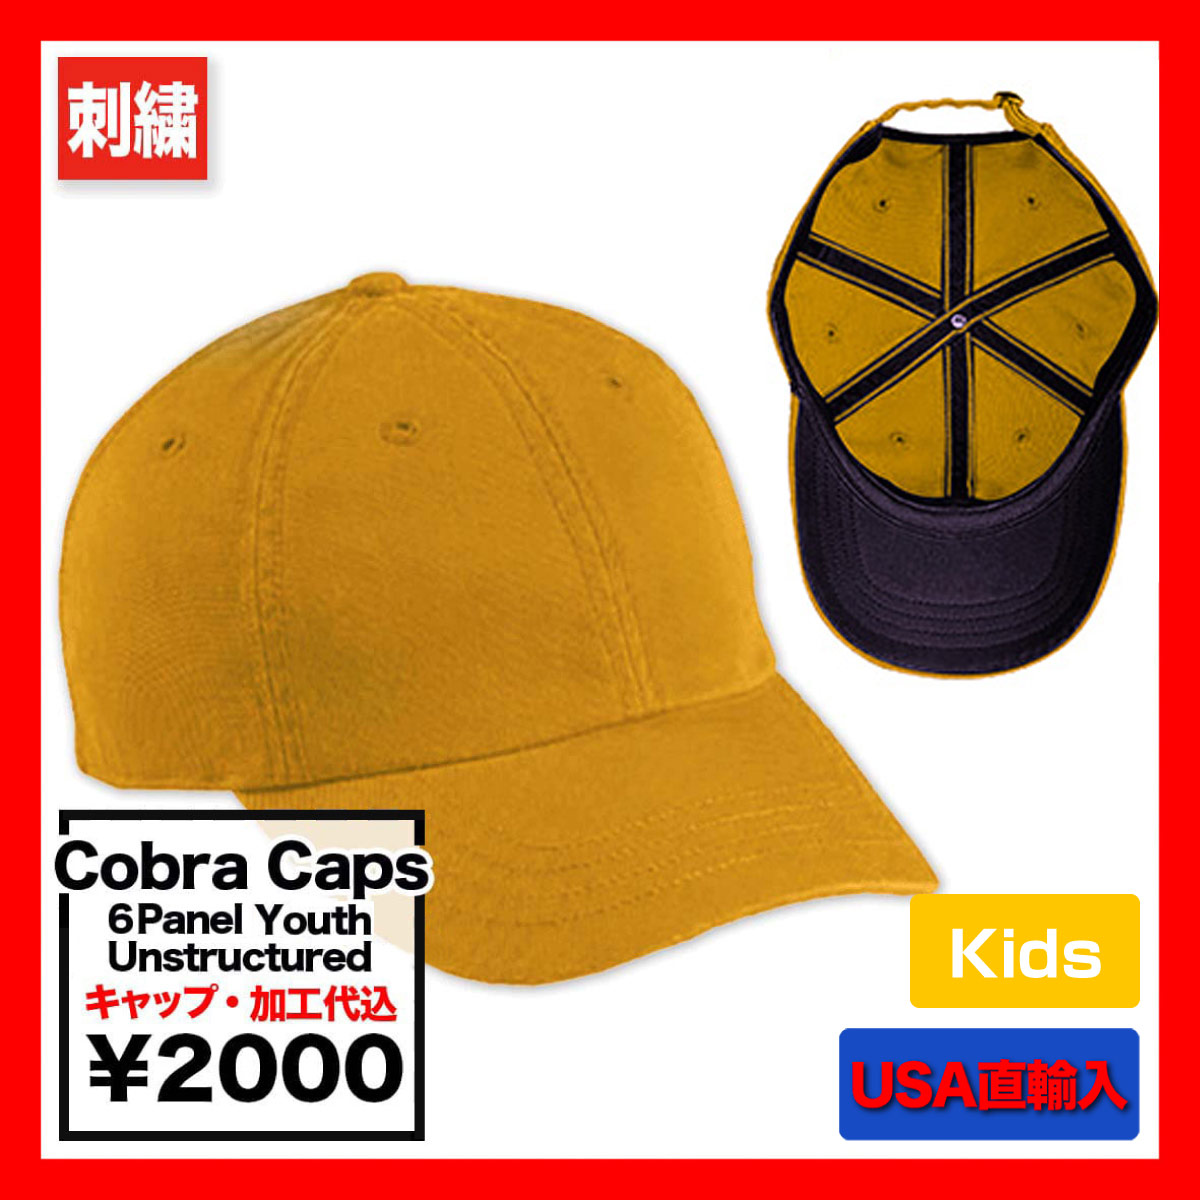 Cobra Caps コブラ キャップス 6 Panel Youth <キッズサイズ> (品番GAP-R)